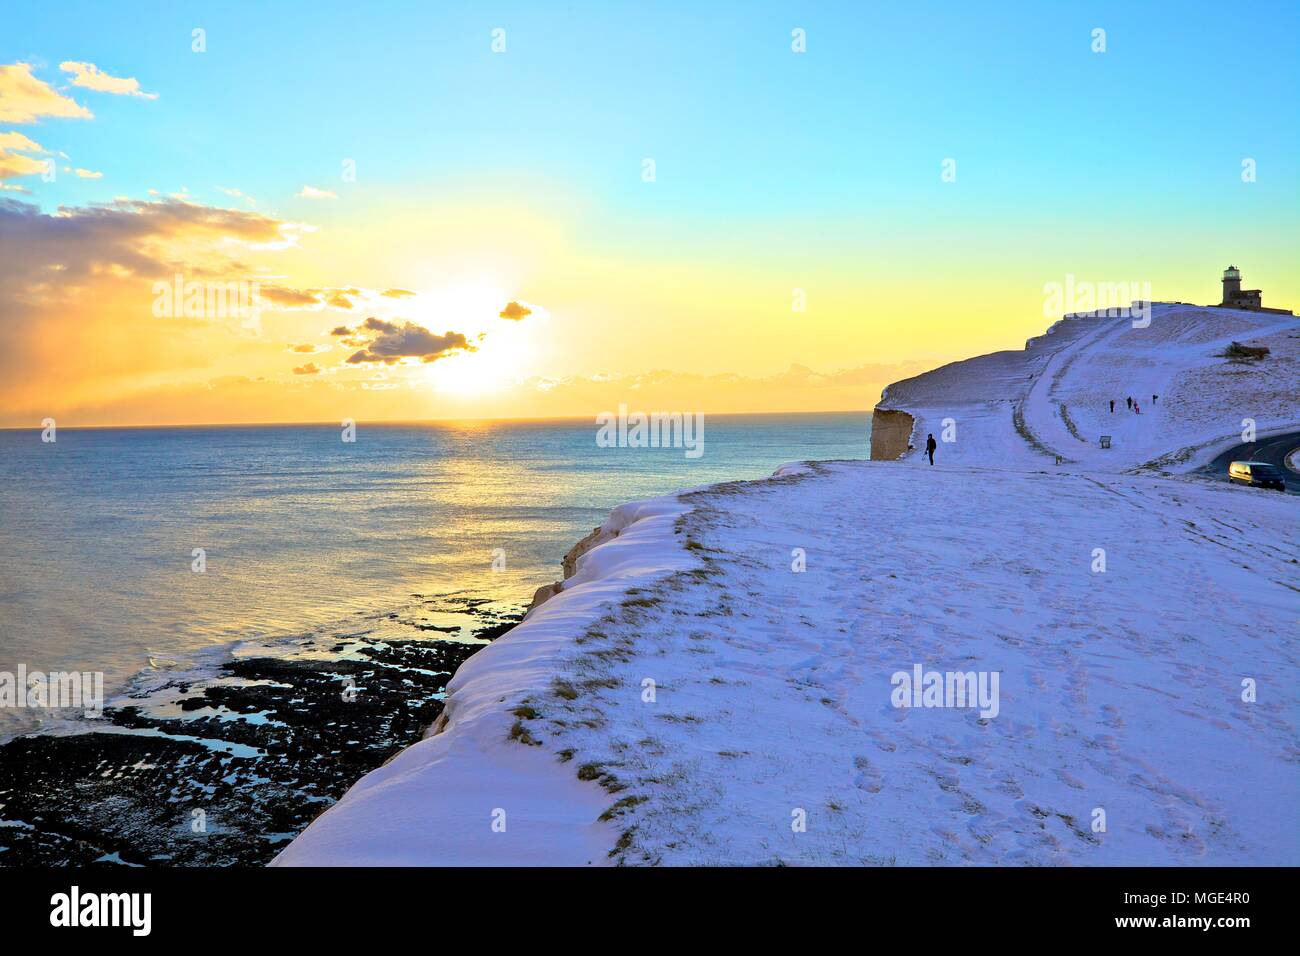 Belle Tout phare à un couvert de neige Beachy Head, Eastbourne Downland Estate, Eastbourne, East Sussex, Royaume-Uni Banque D'Images